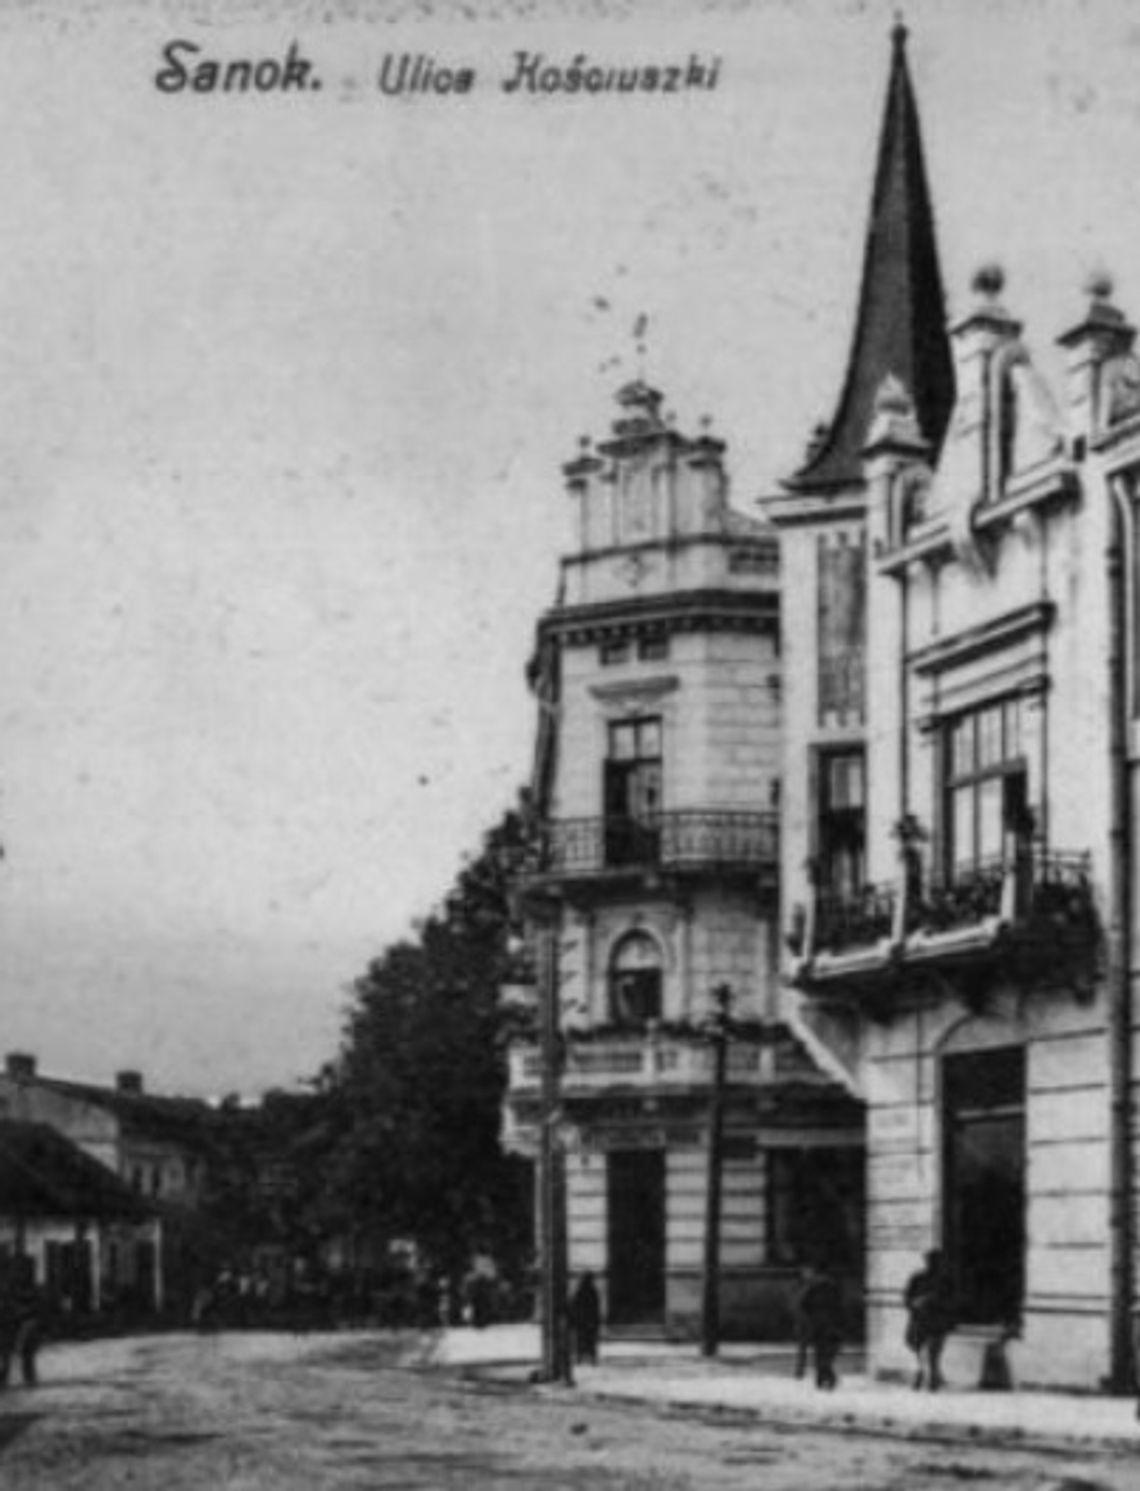 Sanocka afera bankowa z 1904 roku i dymisja burmistrza